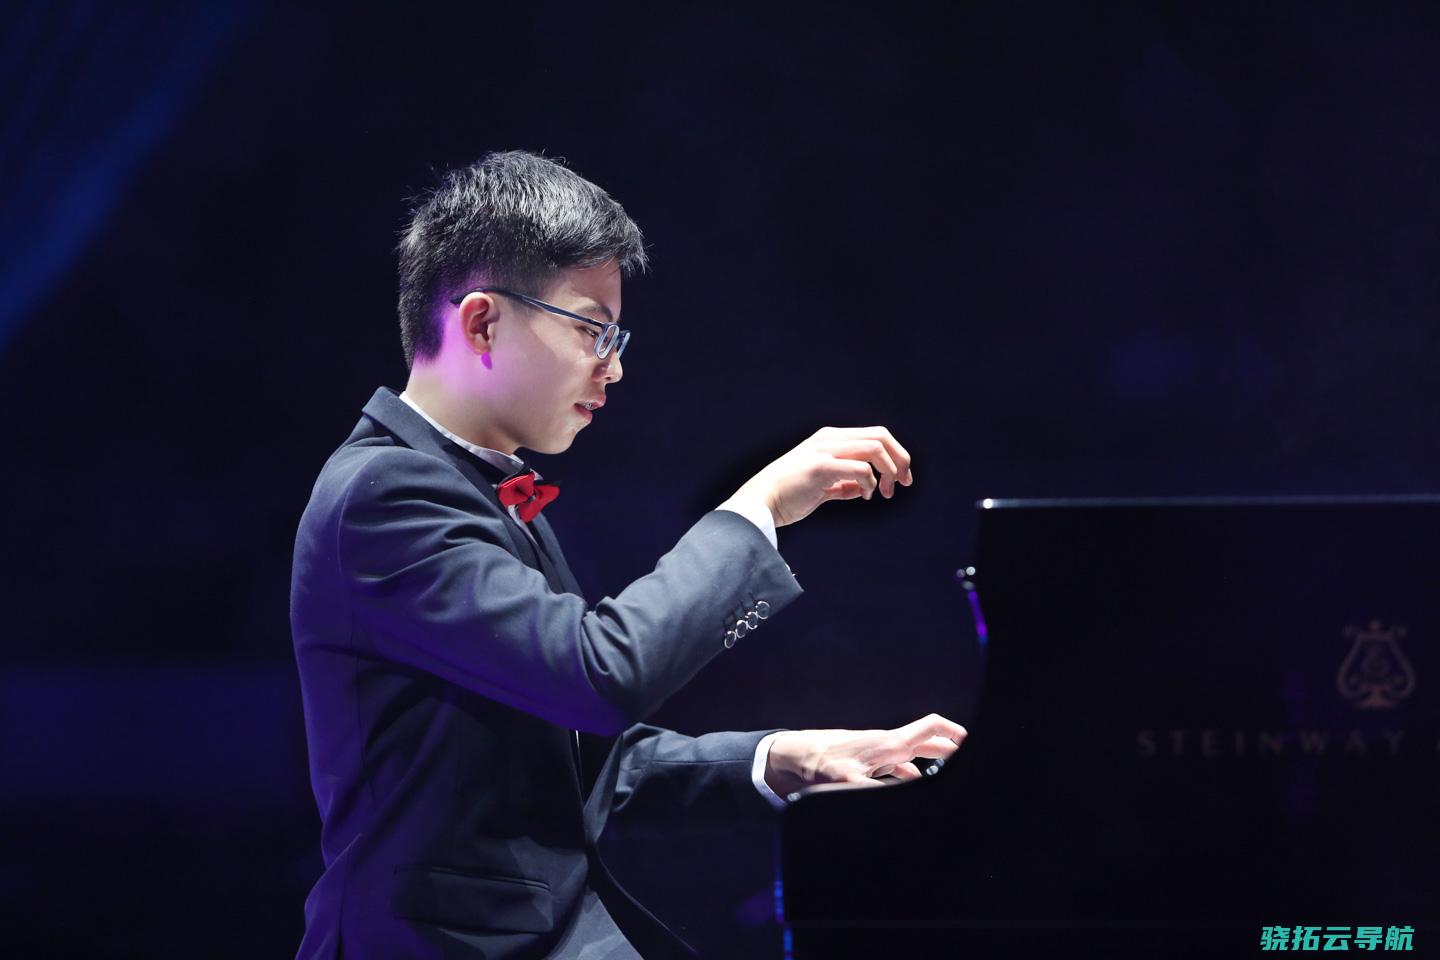 一个自闭症家庭如何寻觅前途 钢琴少年舒海峰